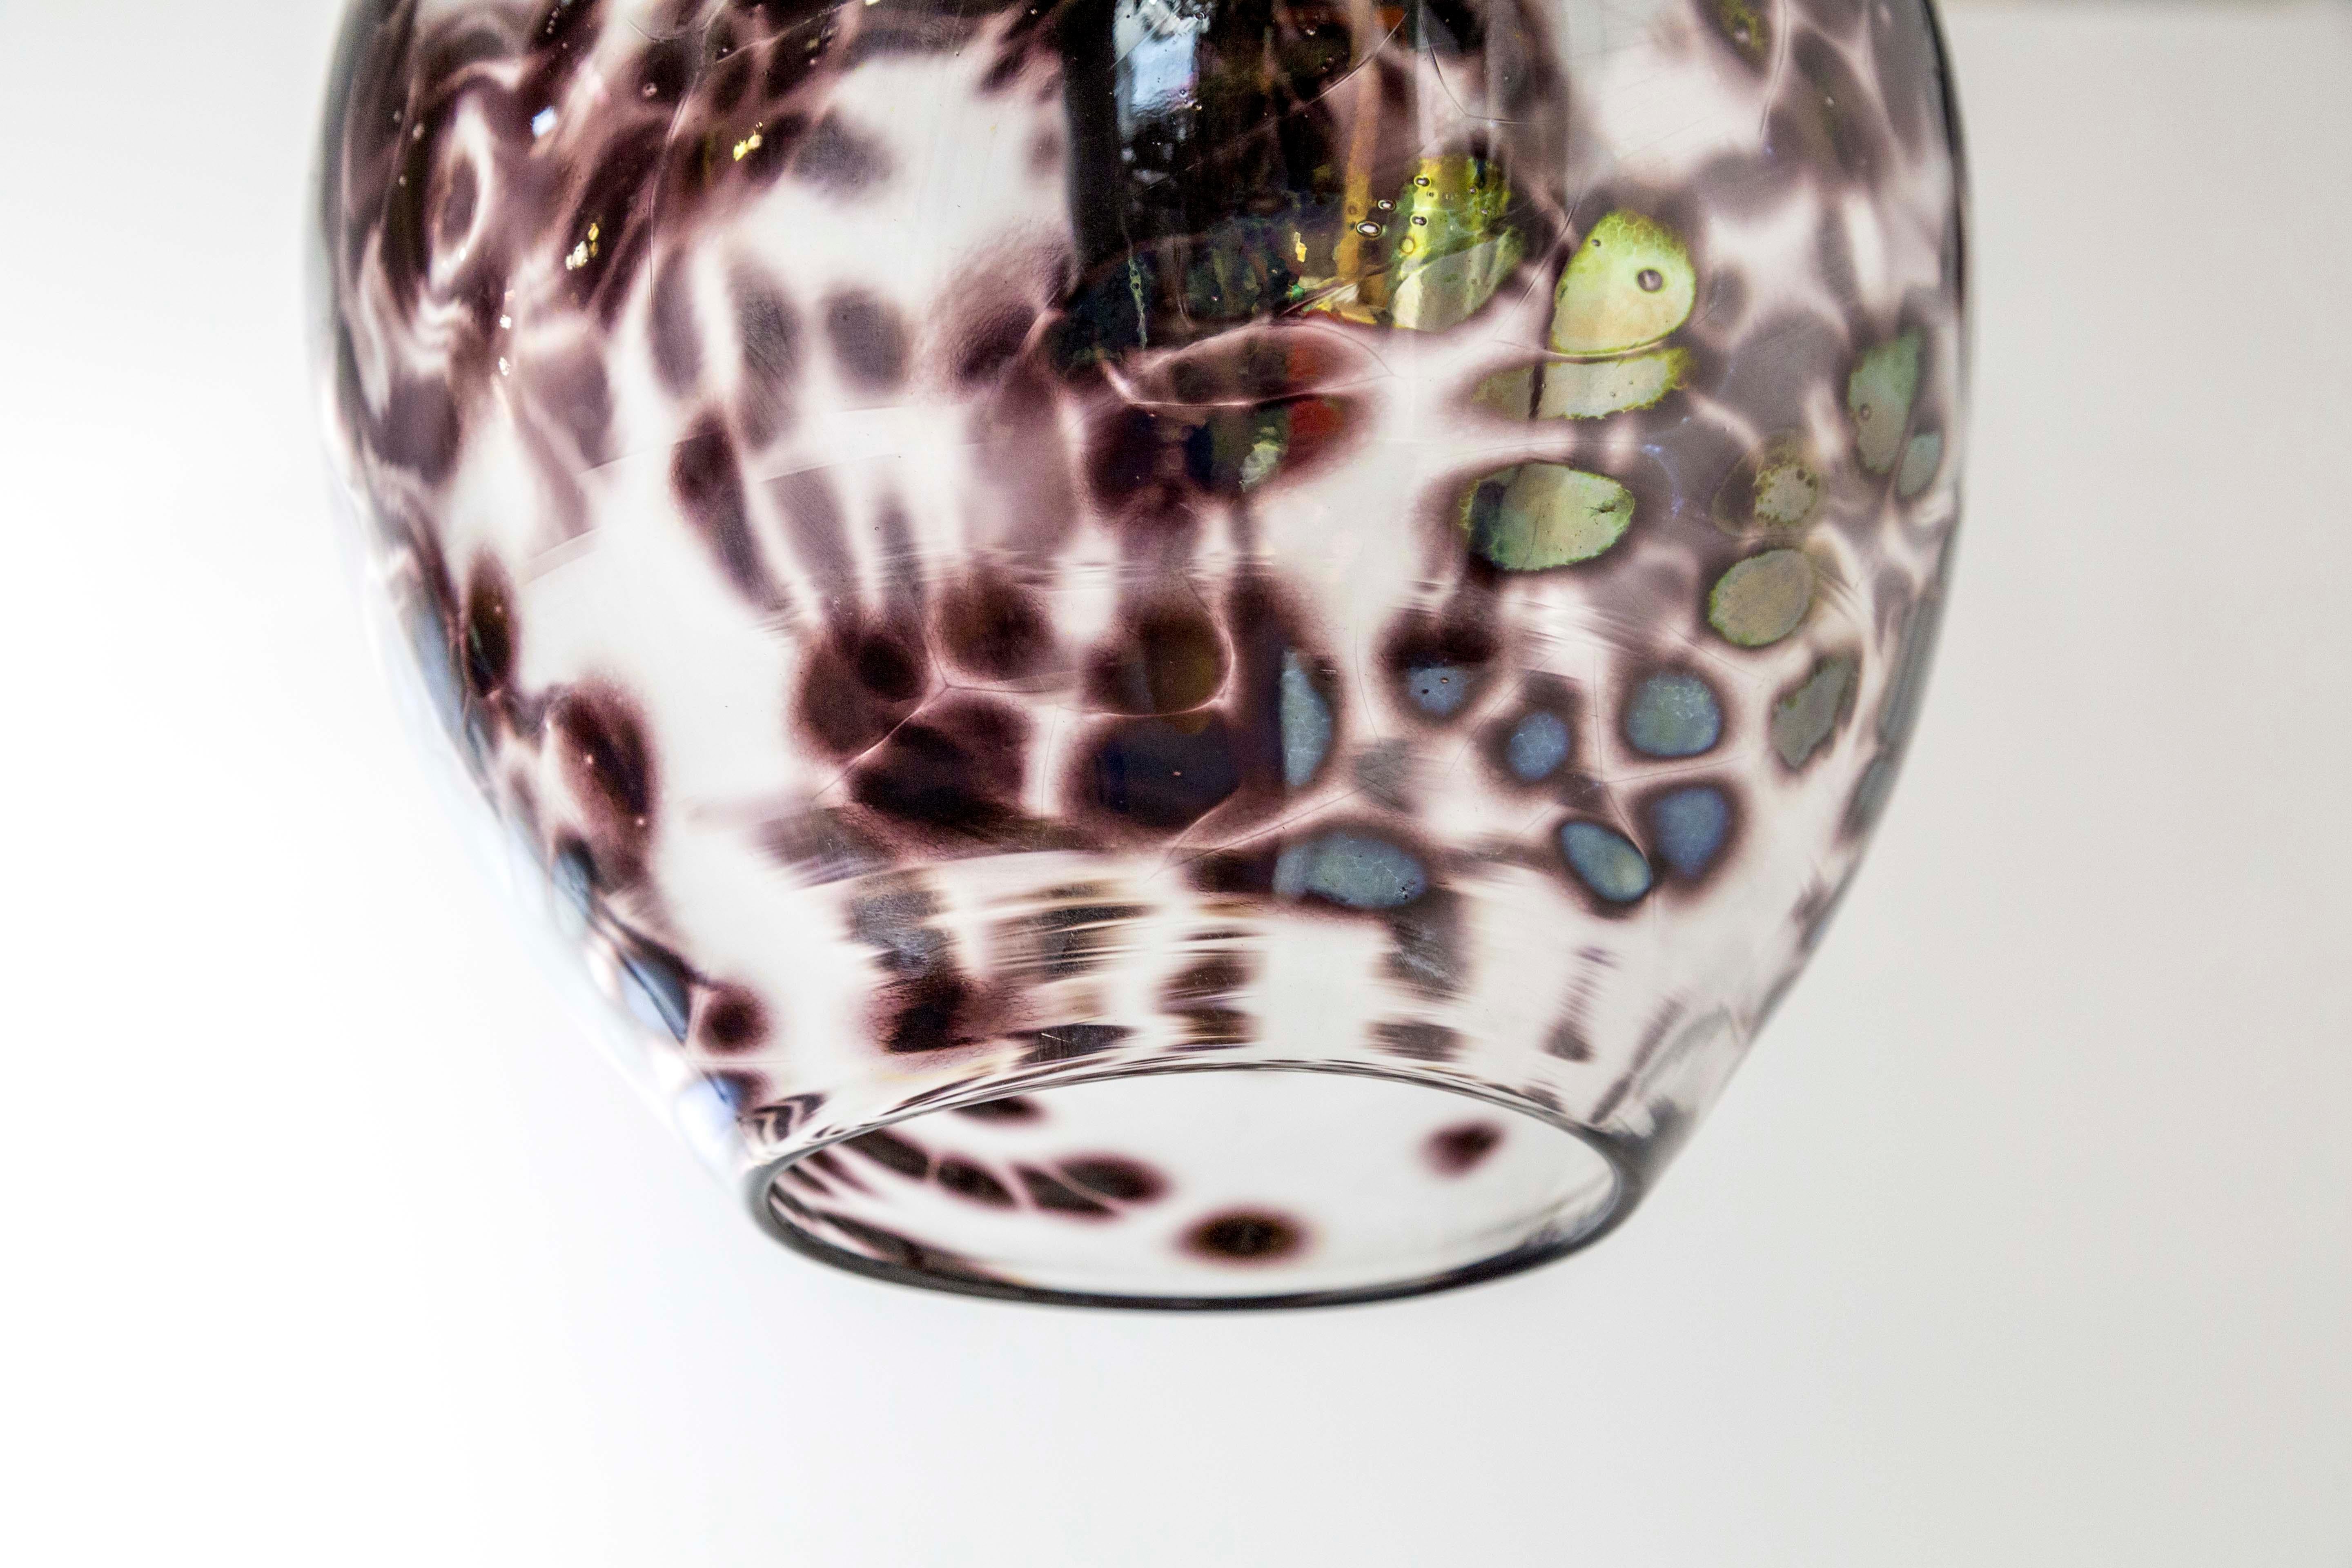 Handgeblasene Pendelleuchten aus klarem und lila/burgunderfarbenem Glas, die an langen, schwarzen Ketten hängen. Die Flecken haben einen 